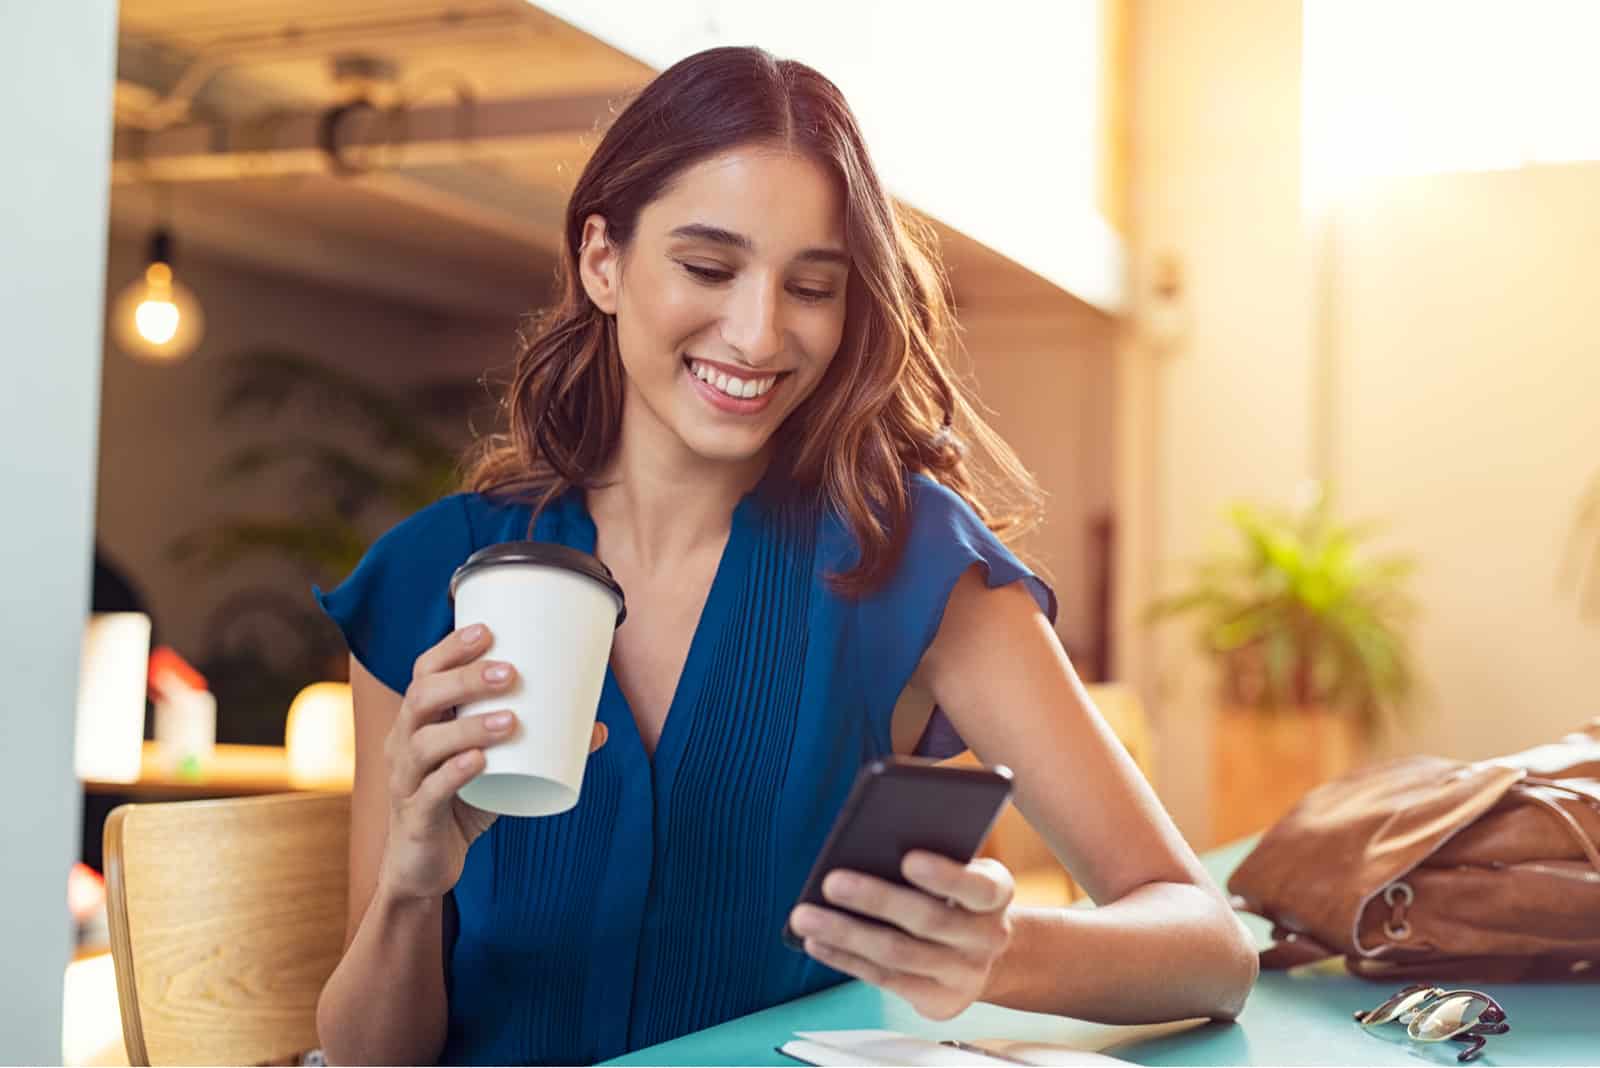 Une jeune femme souriante buvant du café tenant un téléphone à la main et en riant